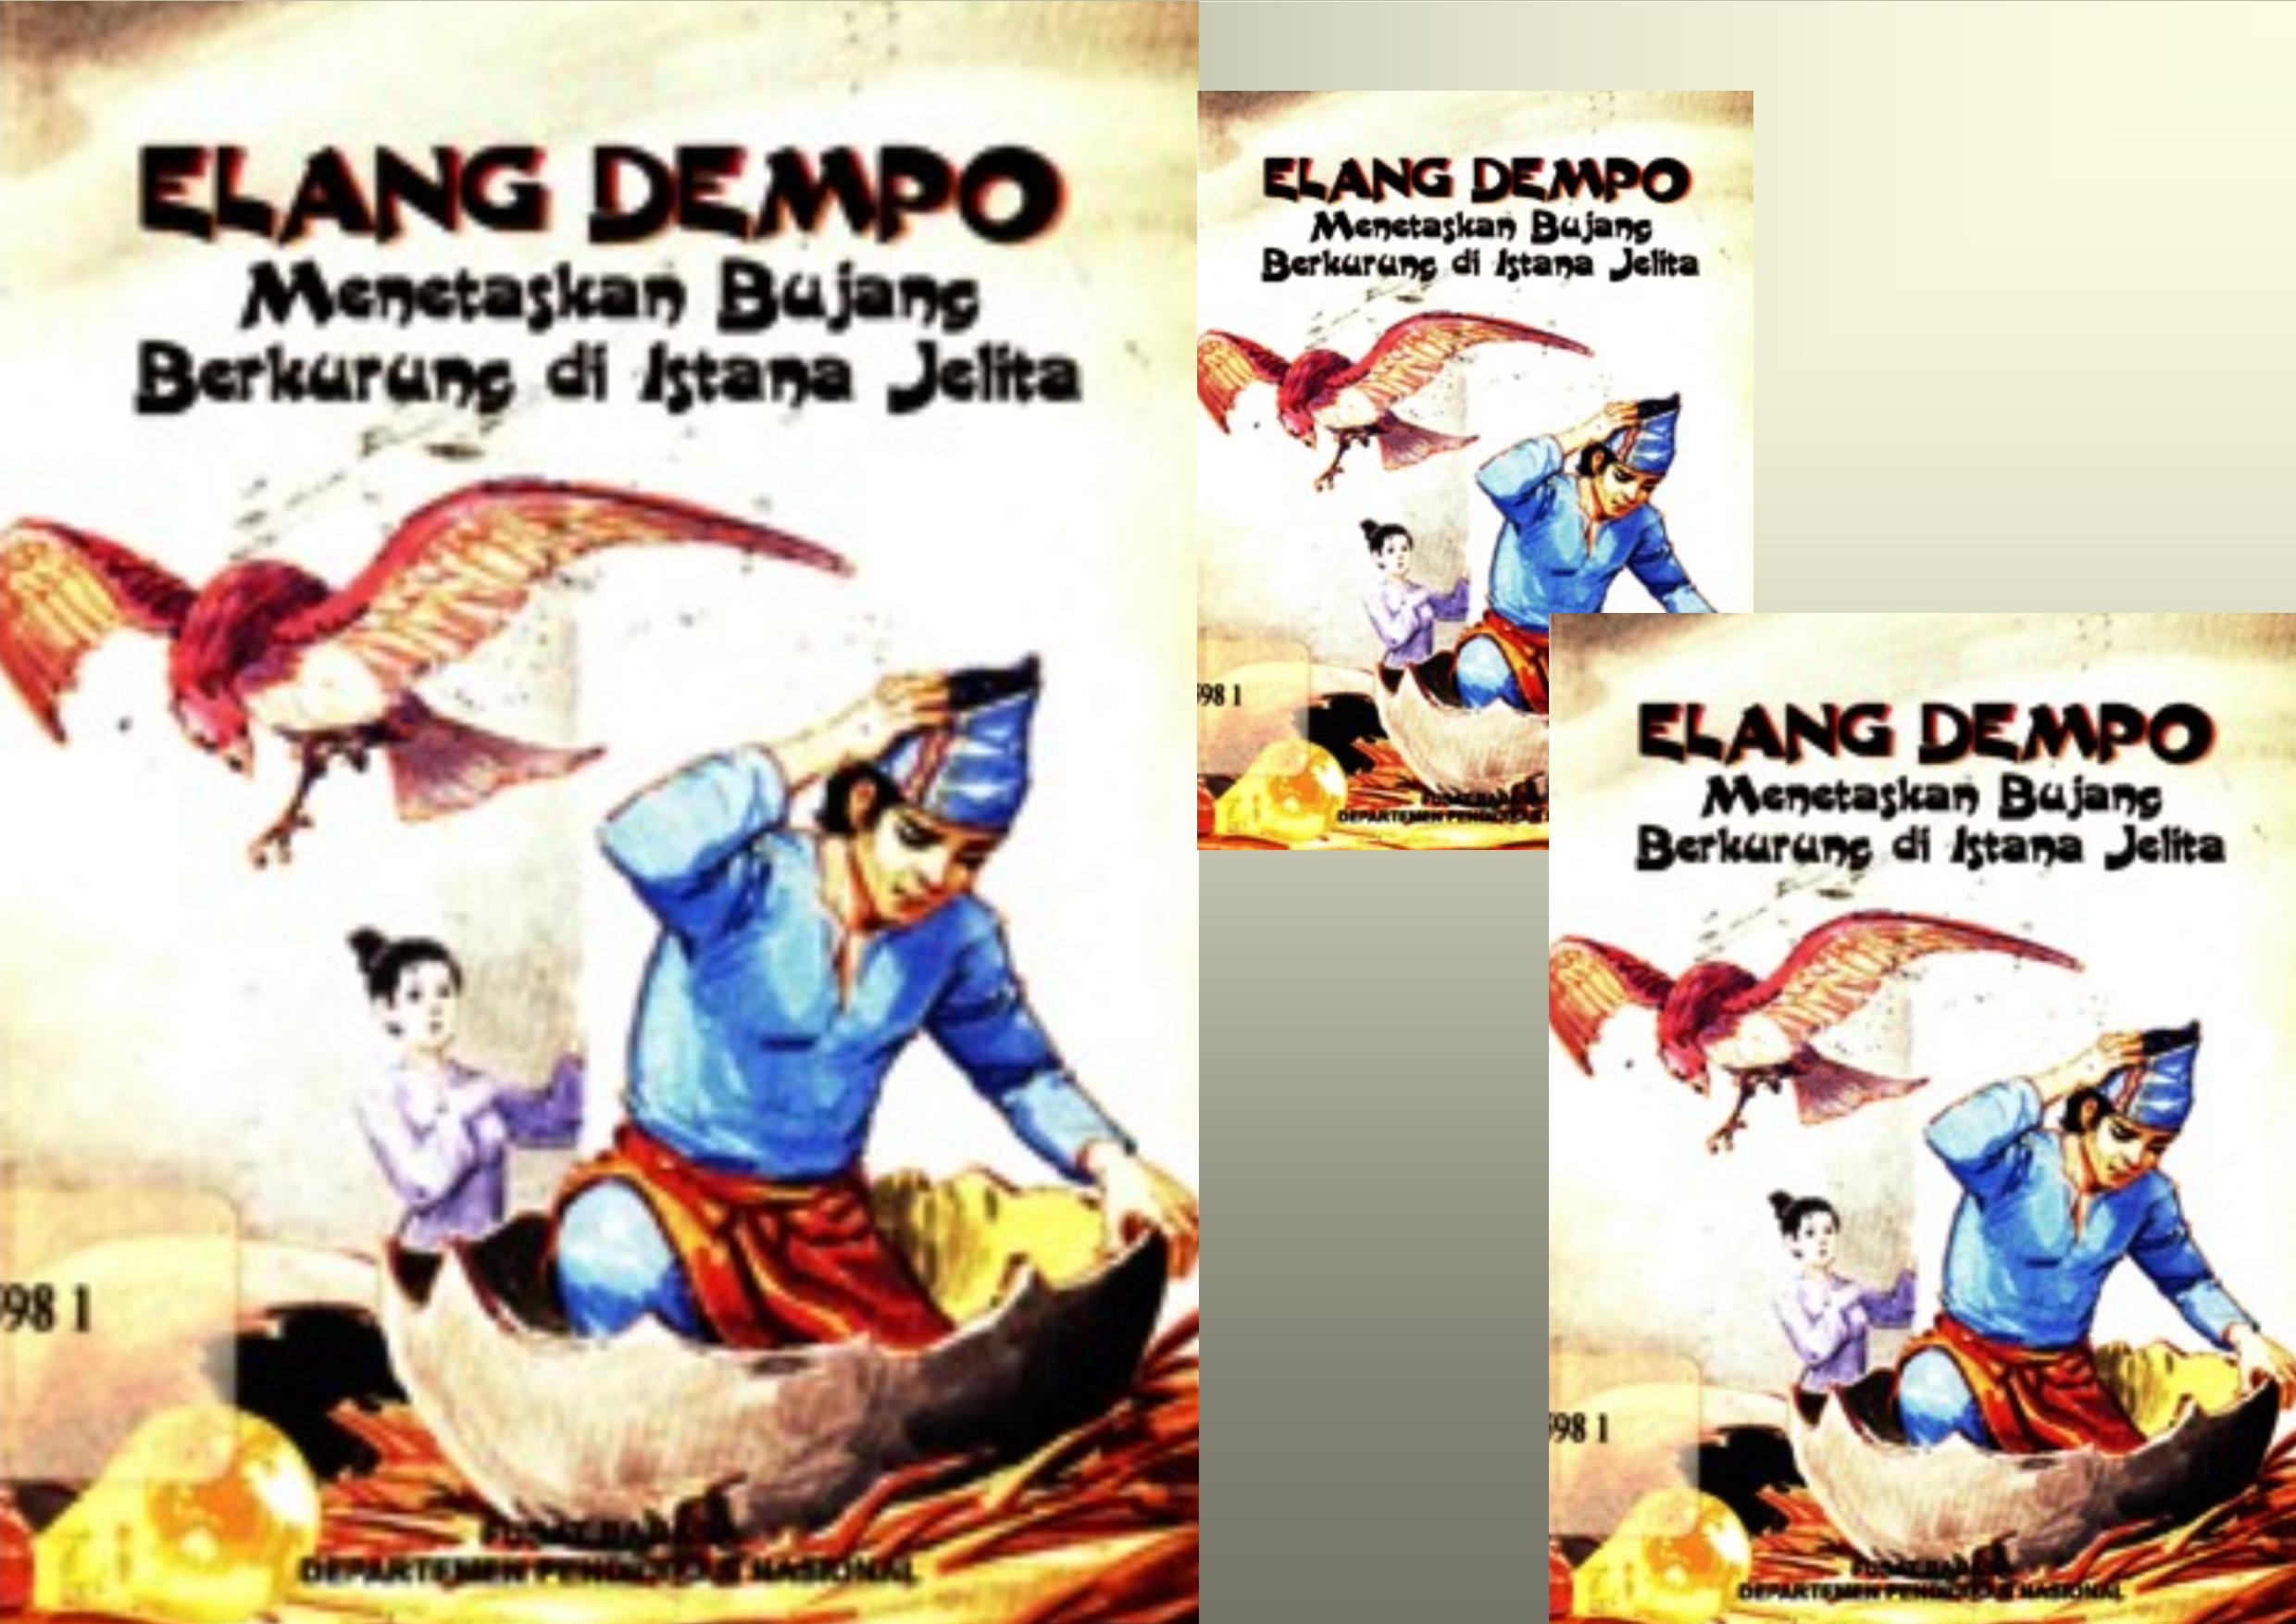 Elang Dempo Menetaskan Bujang Berkurung di Istana Jelita (Bagian 2)